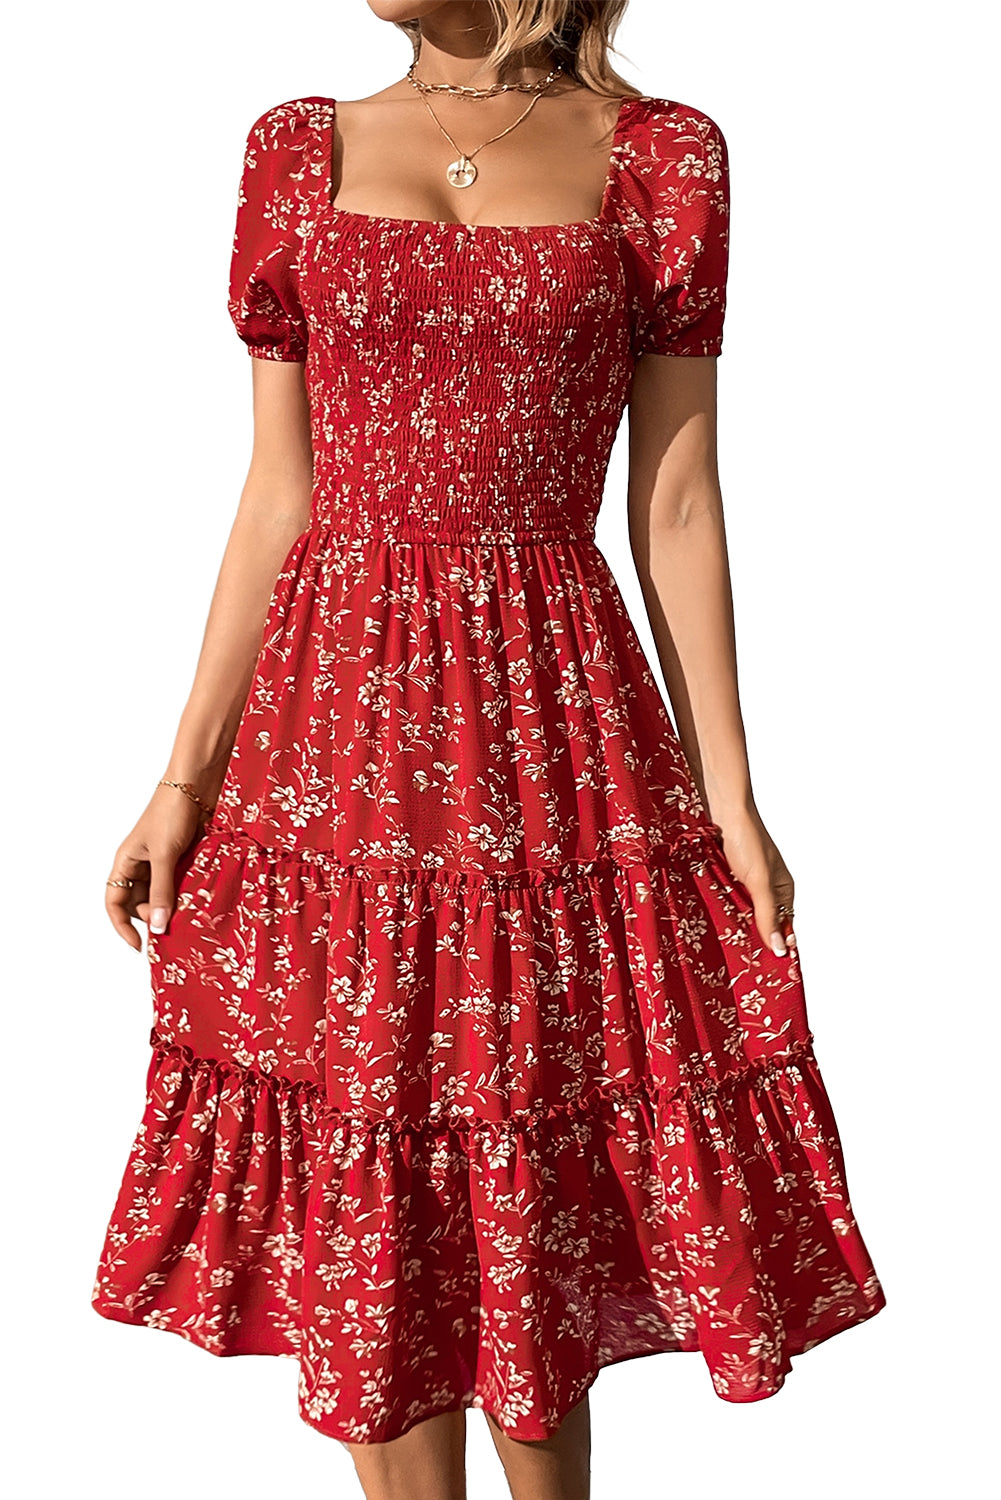 Rdeča midi obleka s cvetličnim izrezom in kvadratnim izrezom, prevlečena z rožicami boho